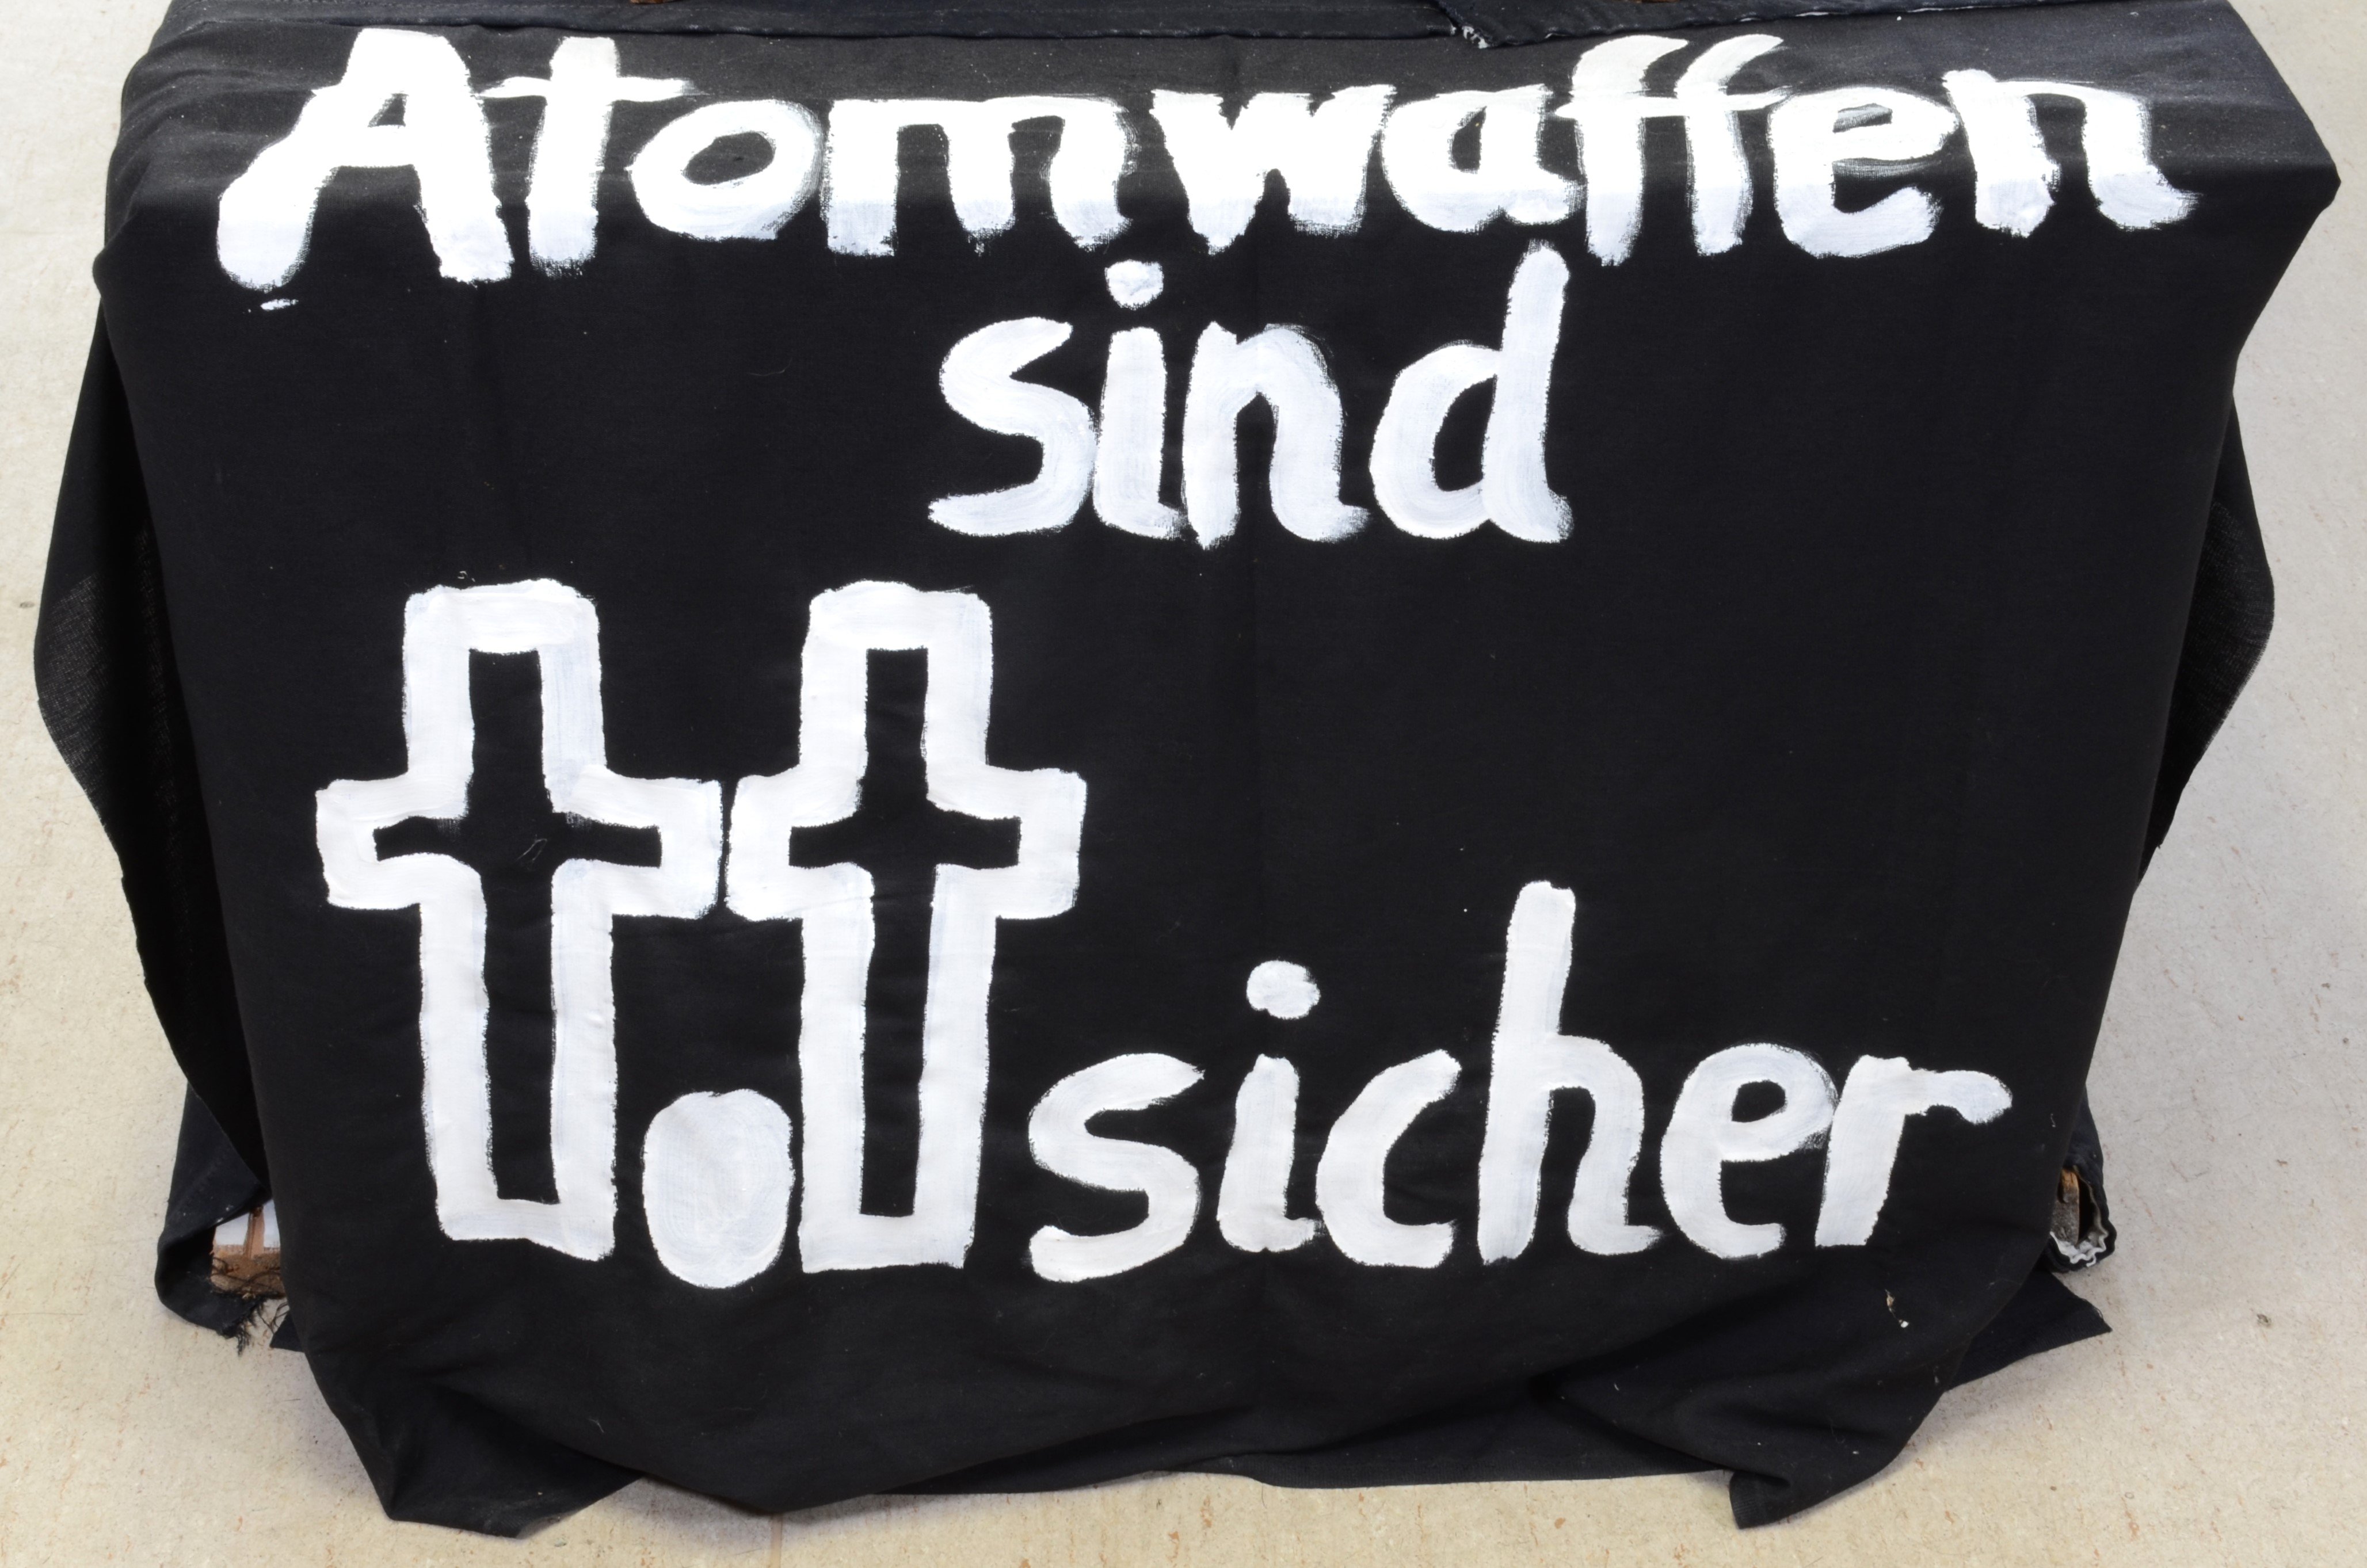 Transparent: "Atomwaffen sind totsicher" für den Protest gegen die Atomschlagübung "Dosse 83" (DDR Geschichtsmuseum im Dokumentationszentrum Perleberg CC BY-SA)